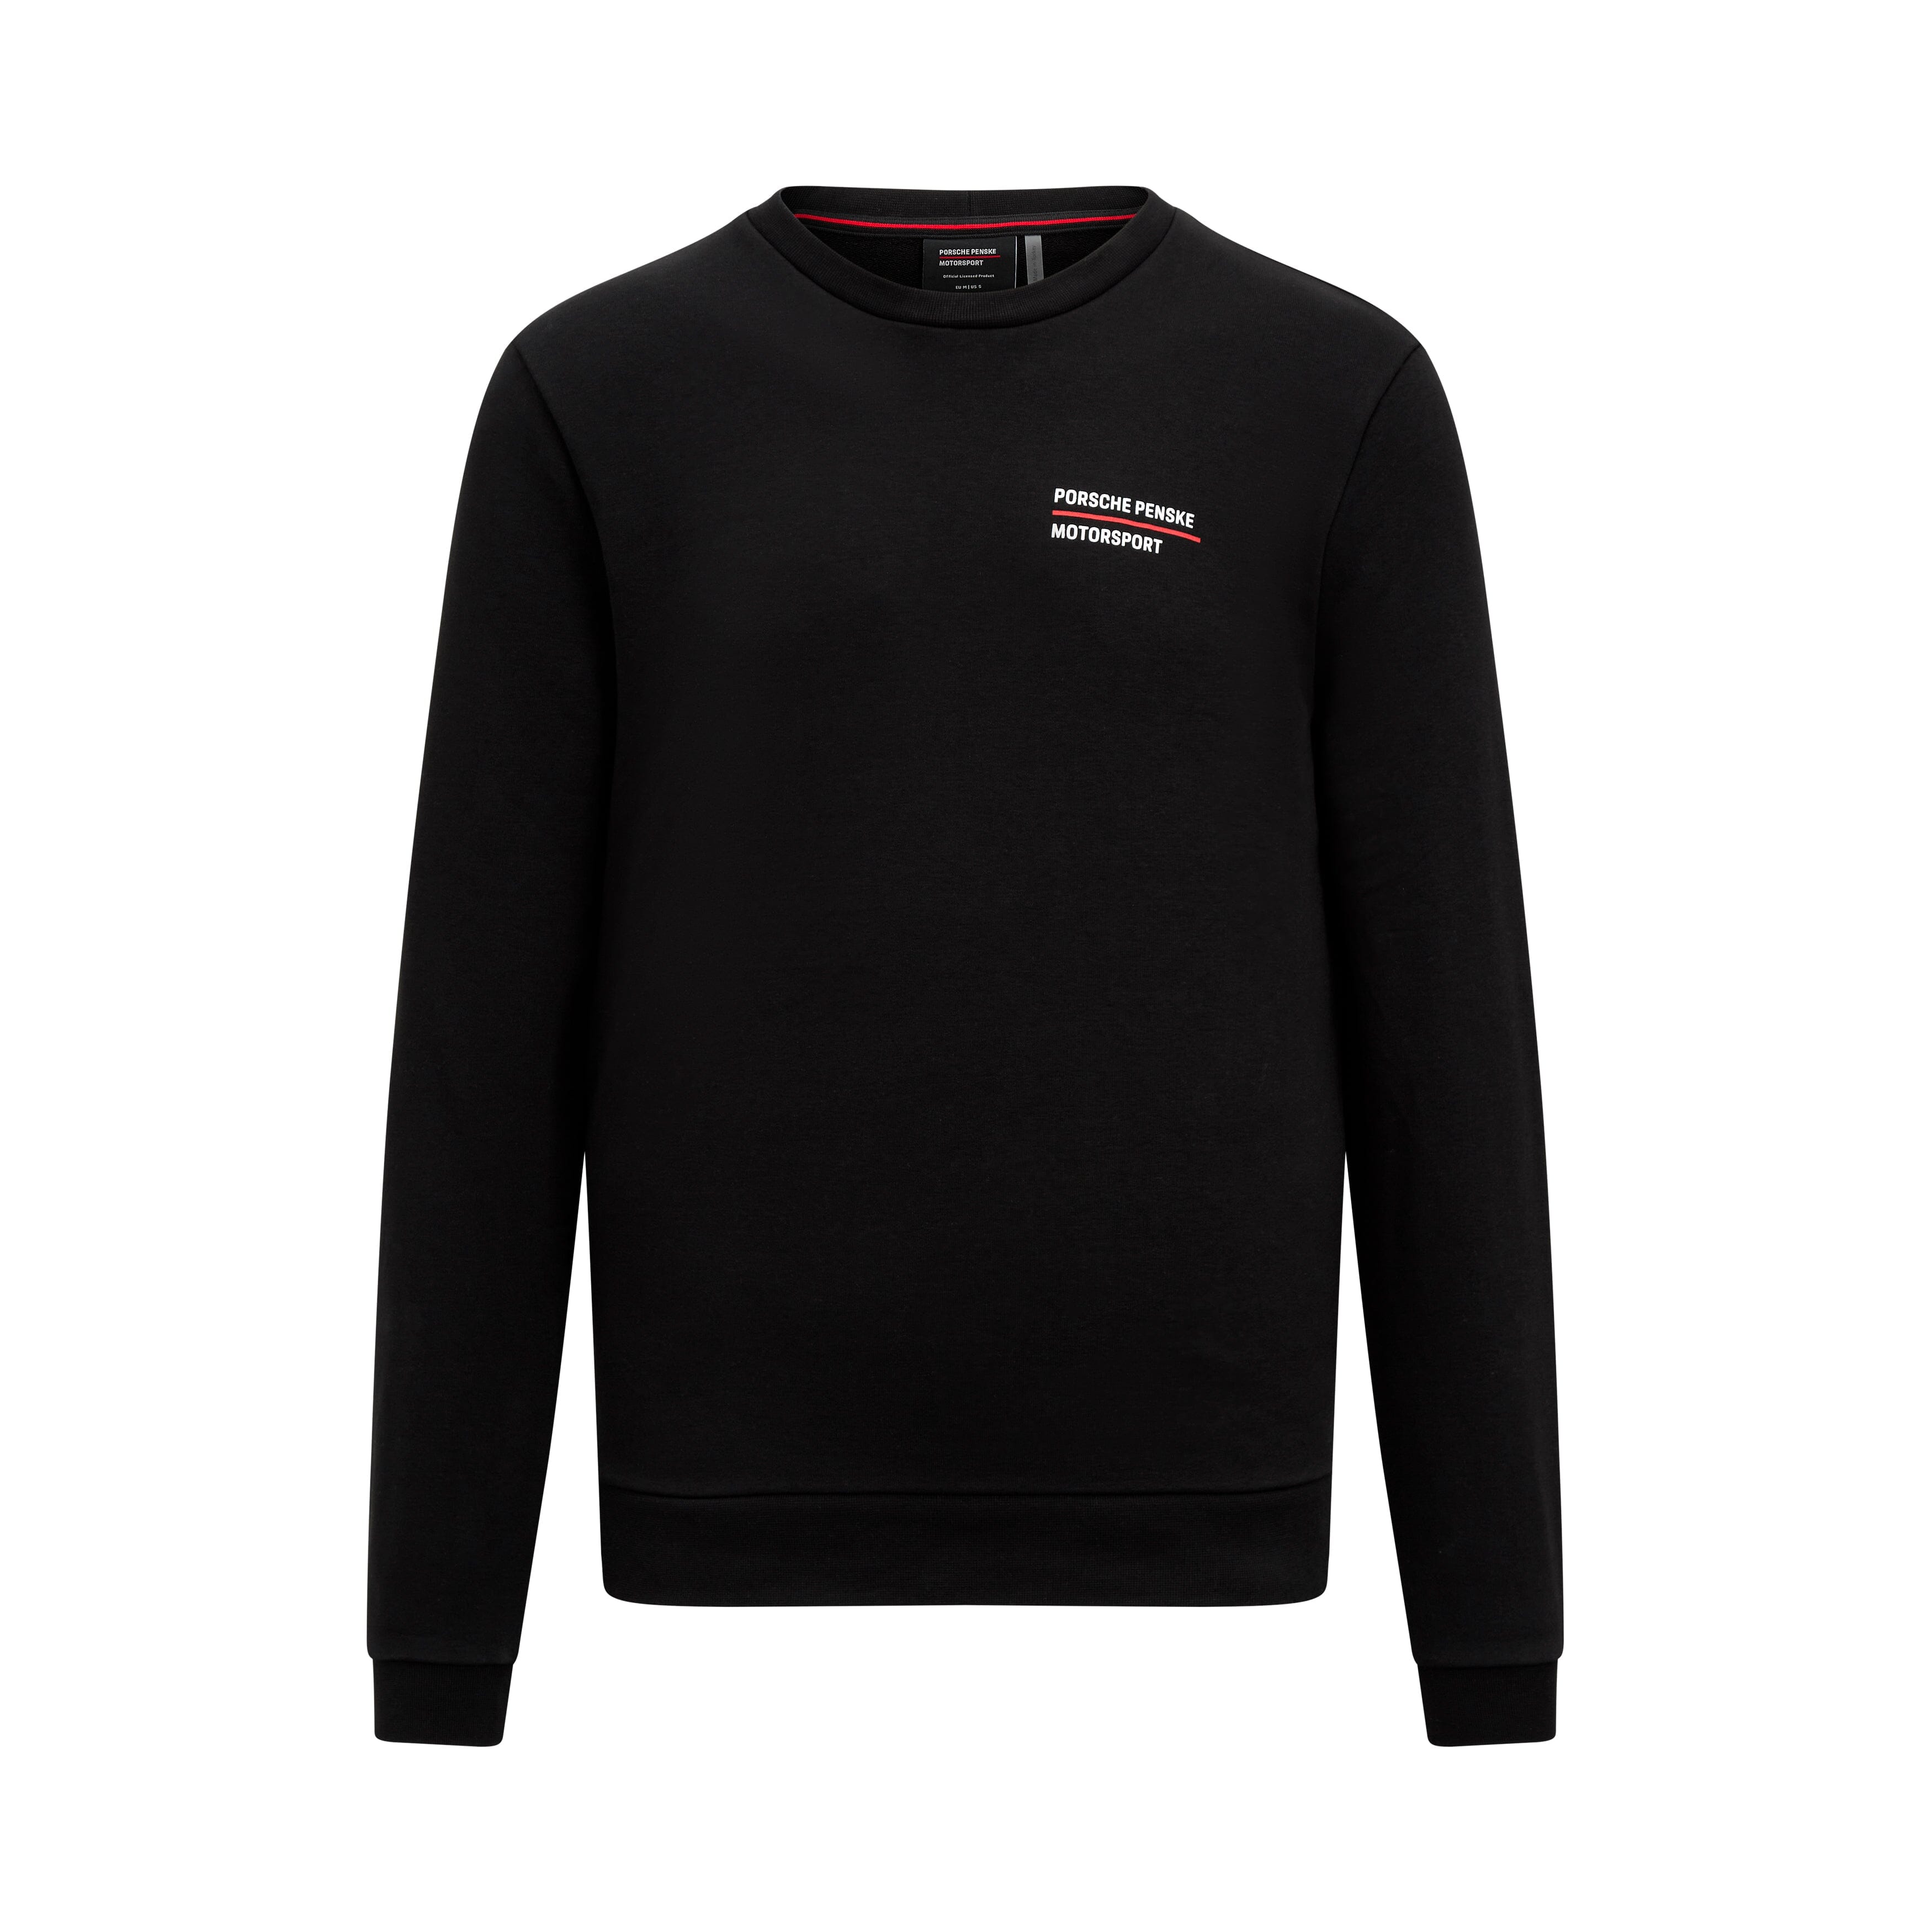 Porsche Penske Motorsport Crew Sweatshirt - Black